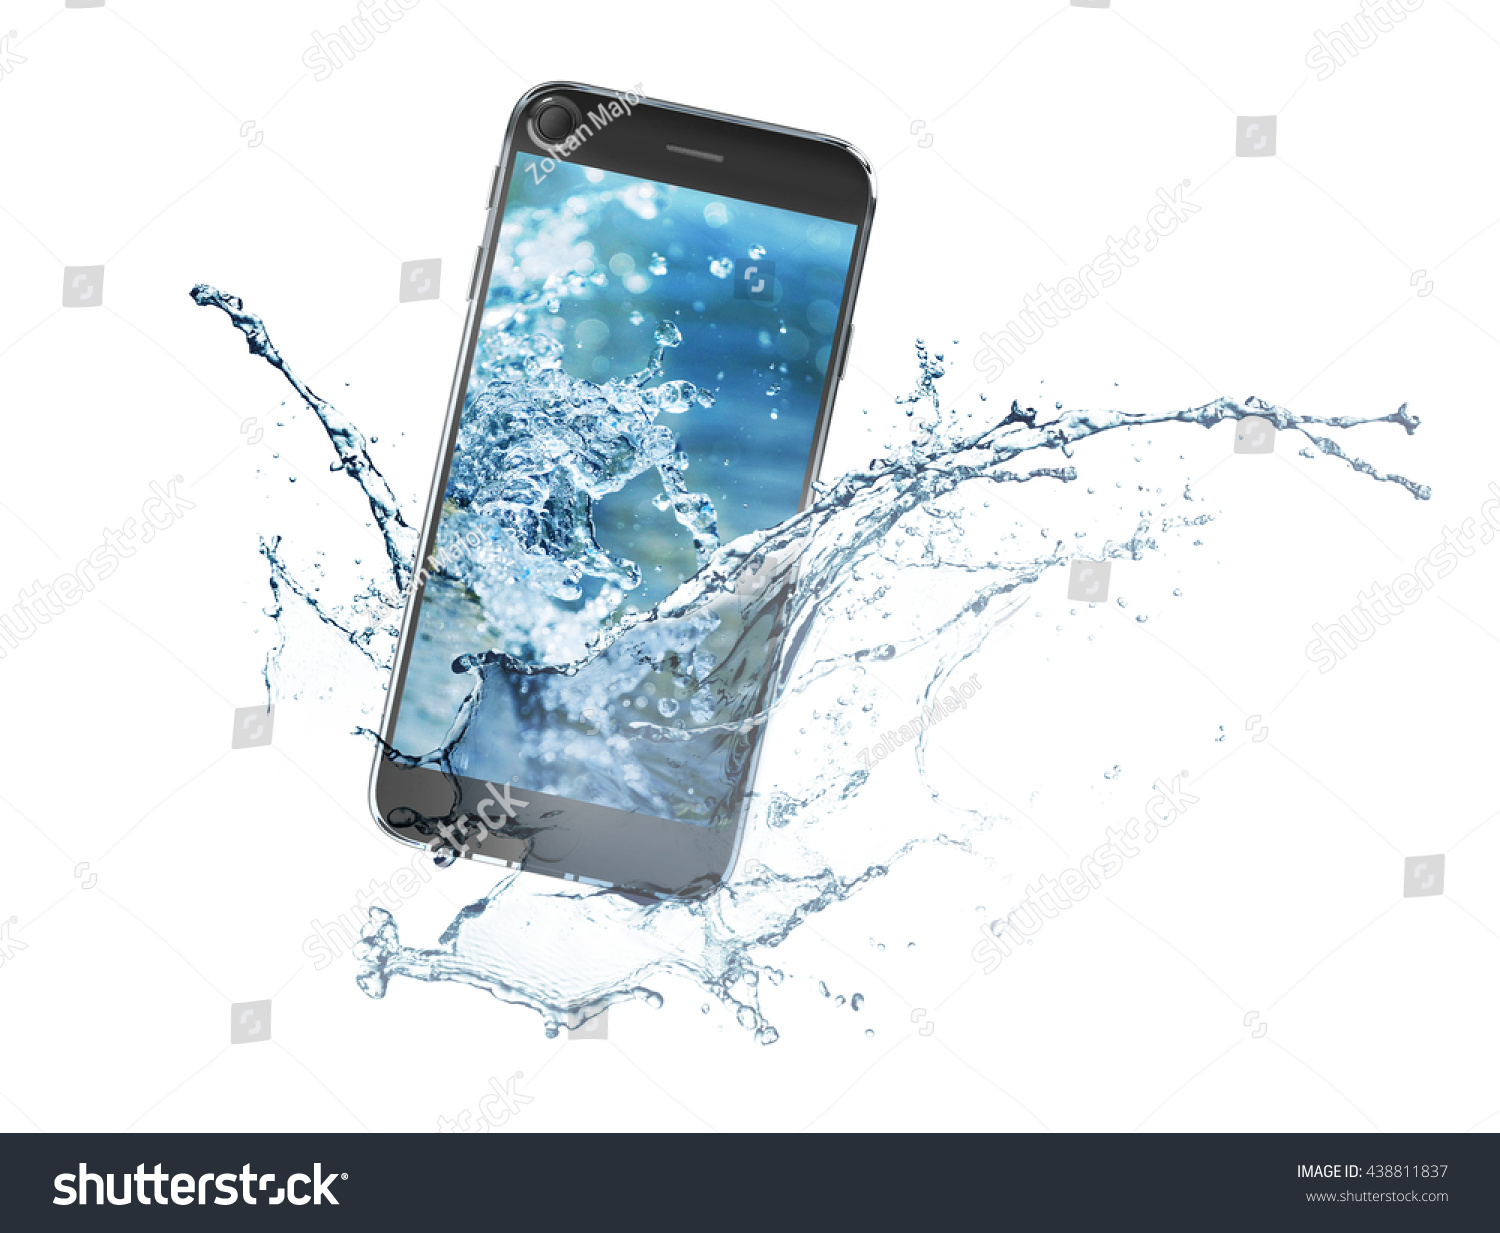 Данные по воде телефон. Смартфон в воде. Смартфон падает в воду. Айфон в воде. Изображение смартфона.